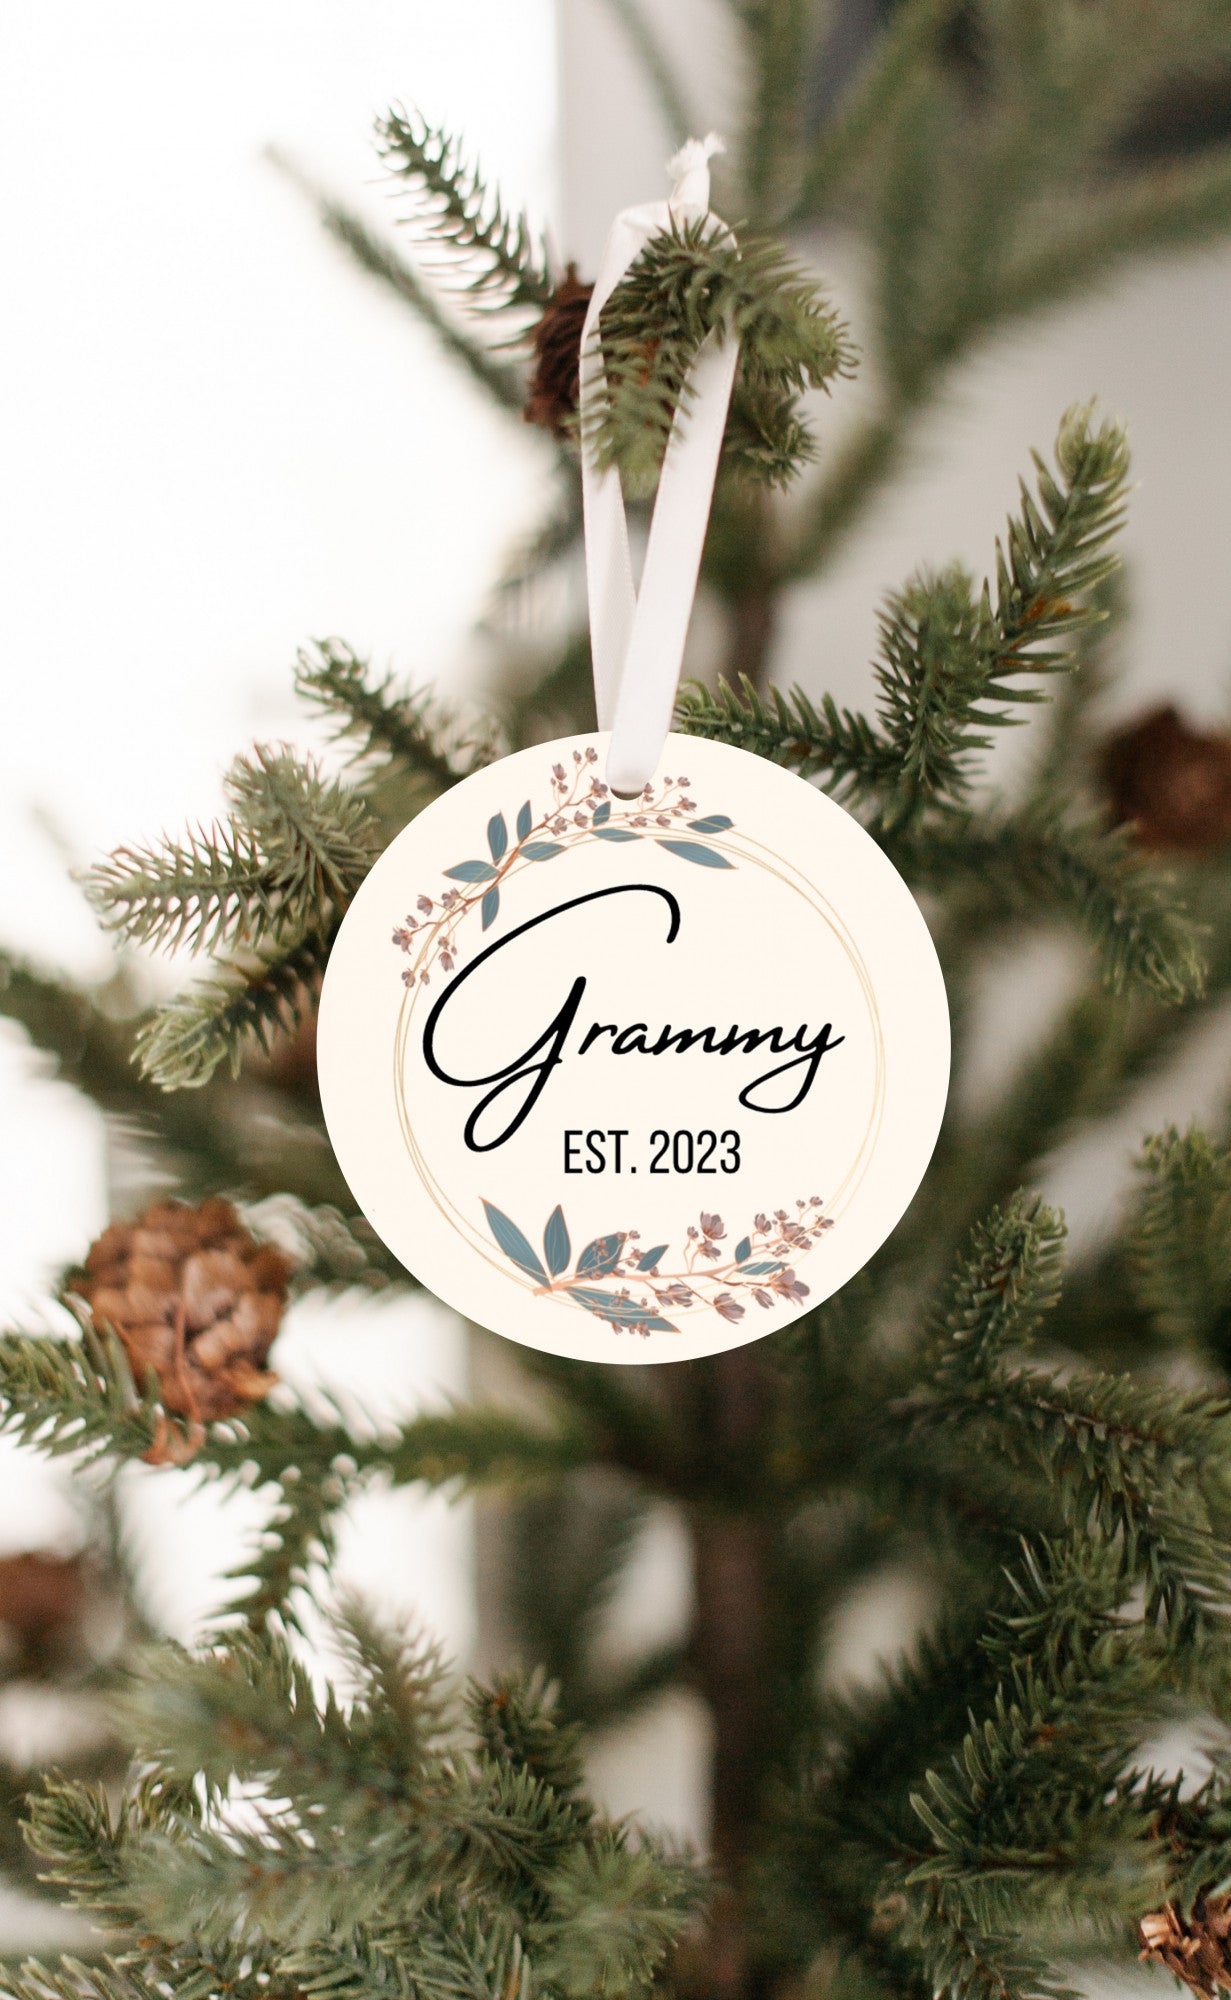 Grammy Est. 2023 Pregnancy Announcement Ornament